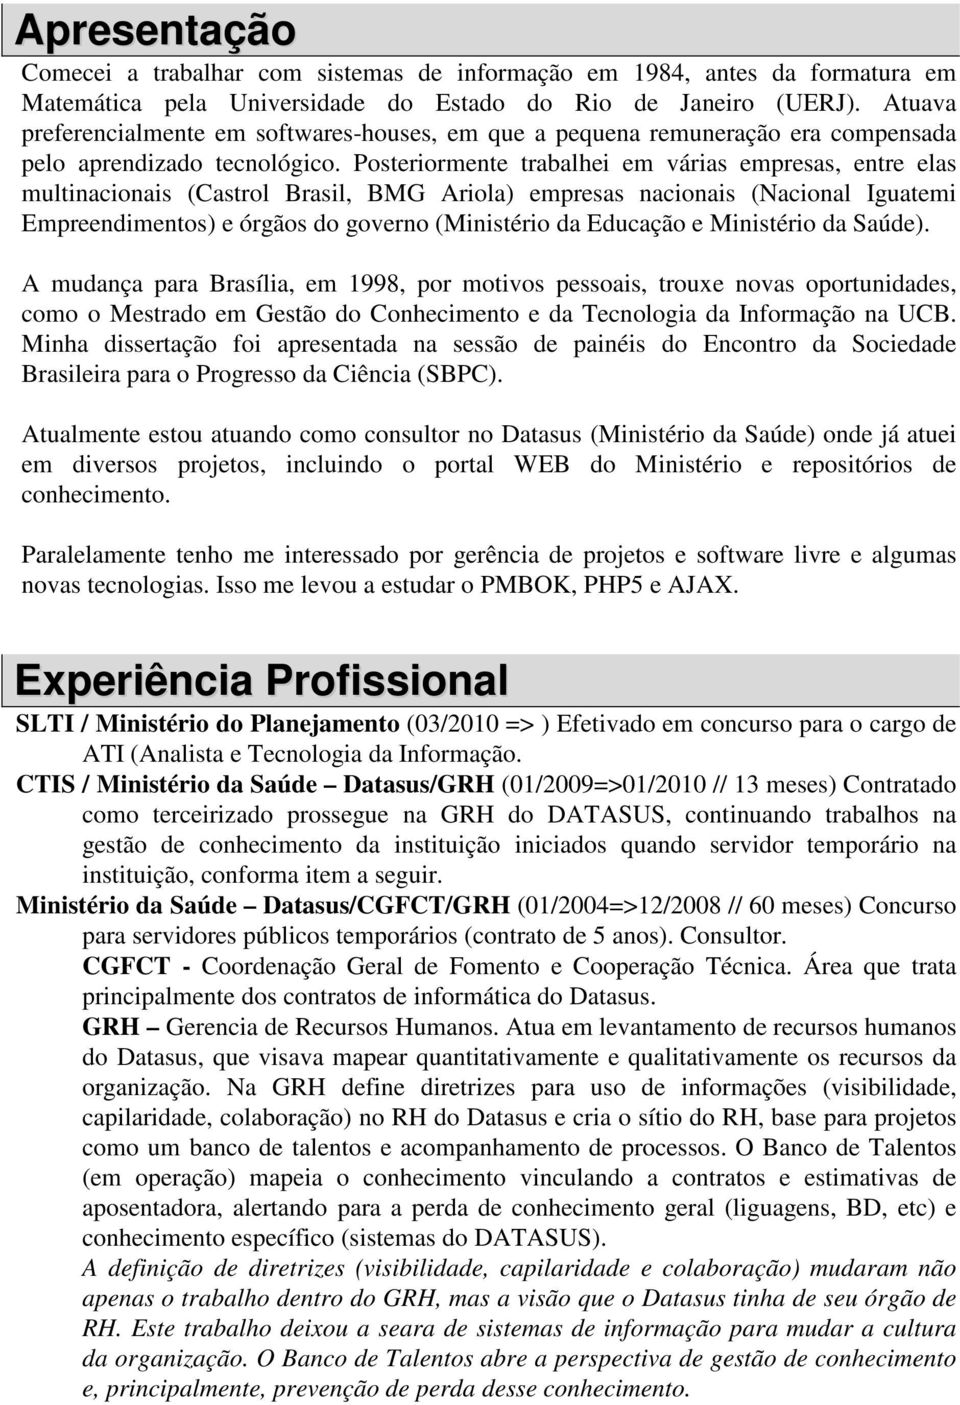 Posteriormente trabalhei em várias empresas, entre elas multinacionais (Castrol Brasil, BMG Ariola) empresas nacionais (Nacional Iguatemi Empreendimentos) e órgãos do governo (Ministério da Educação